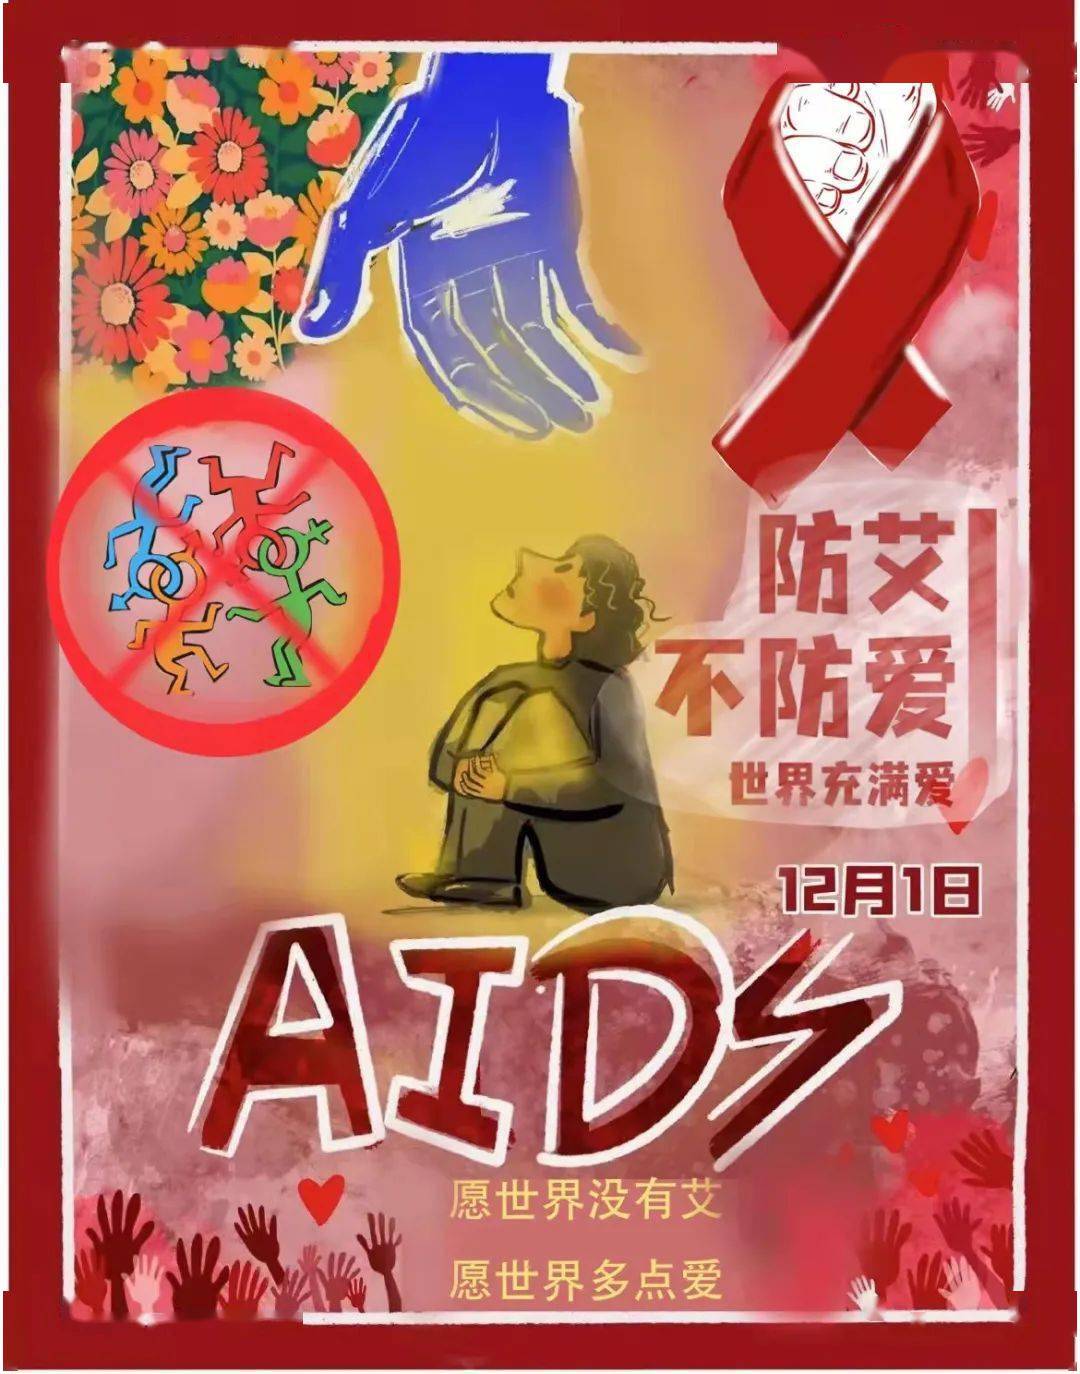 山东财经大学东方学院预防艾滋病宣传画评选结果来了